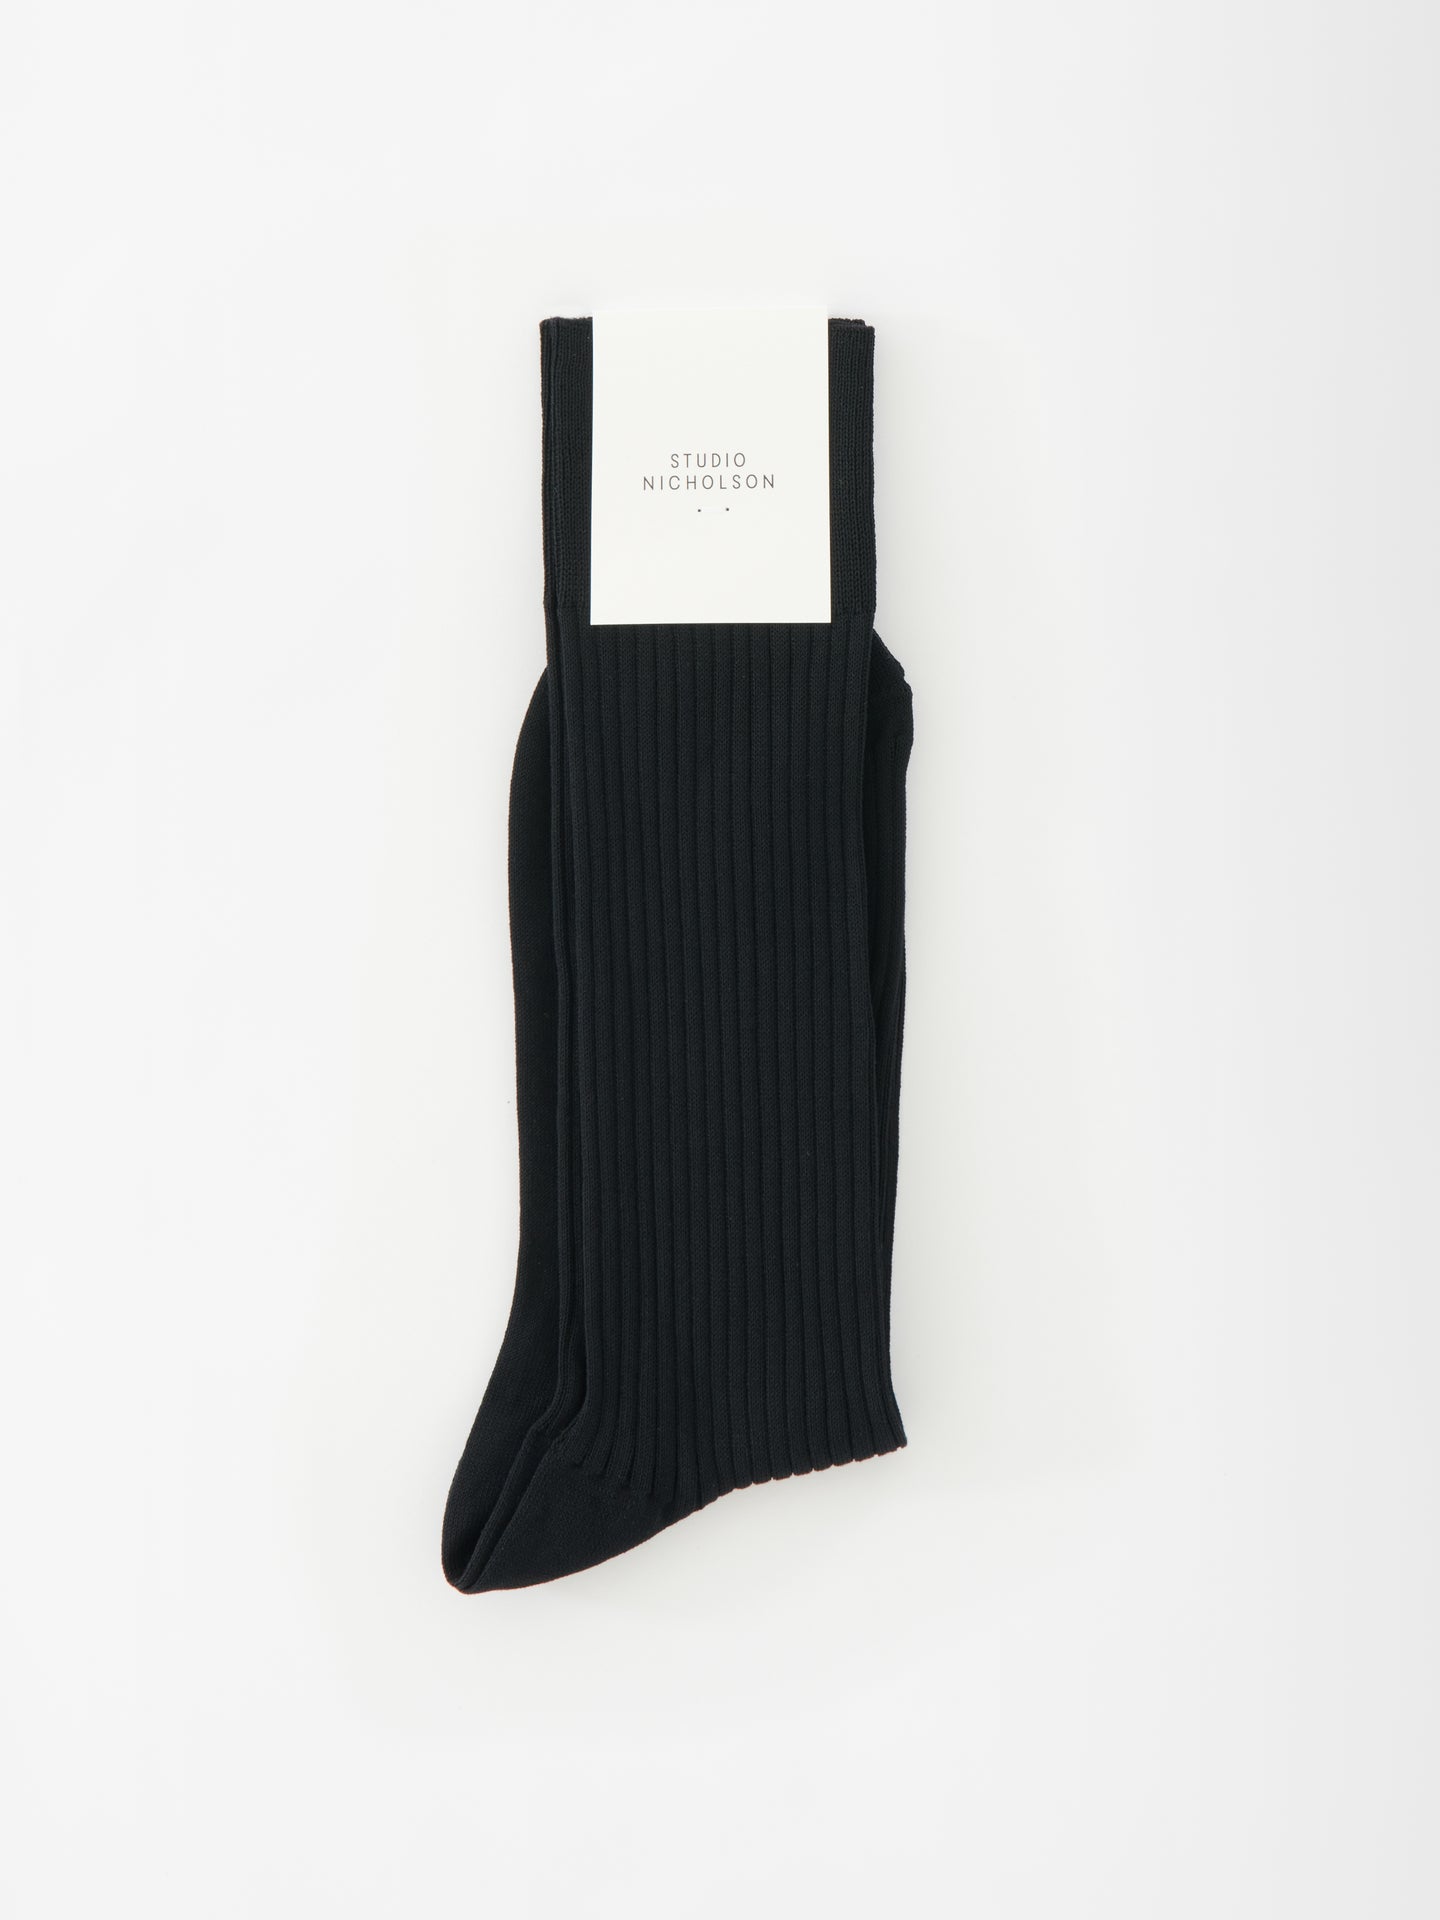 Neffi Socks in Black